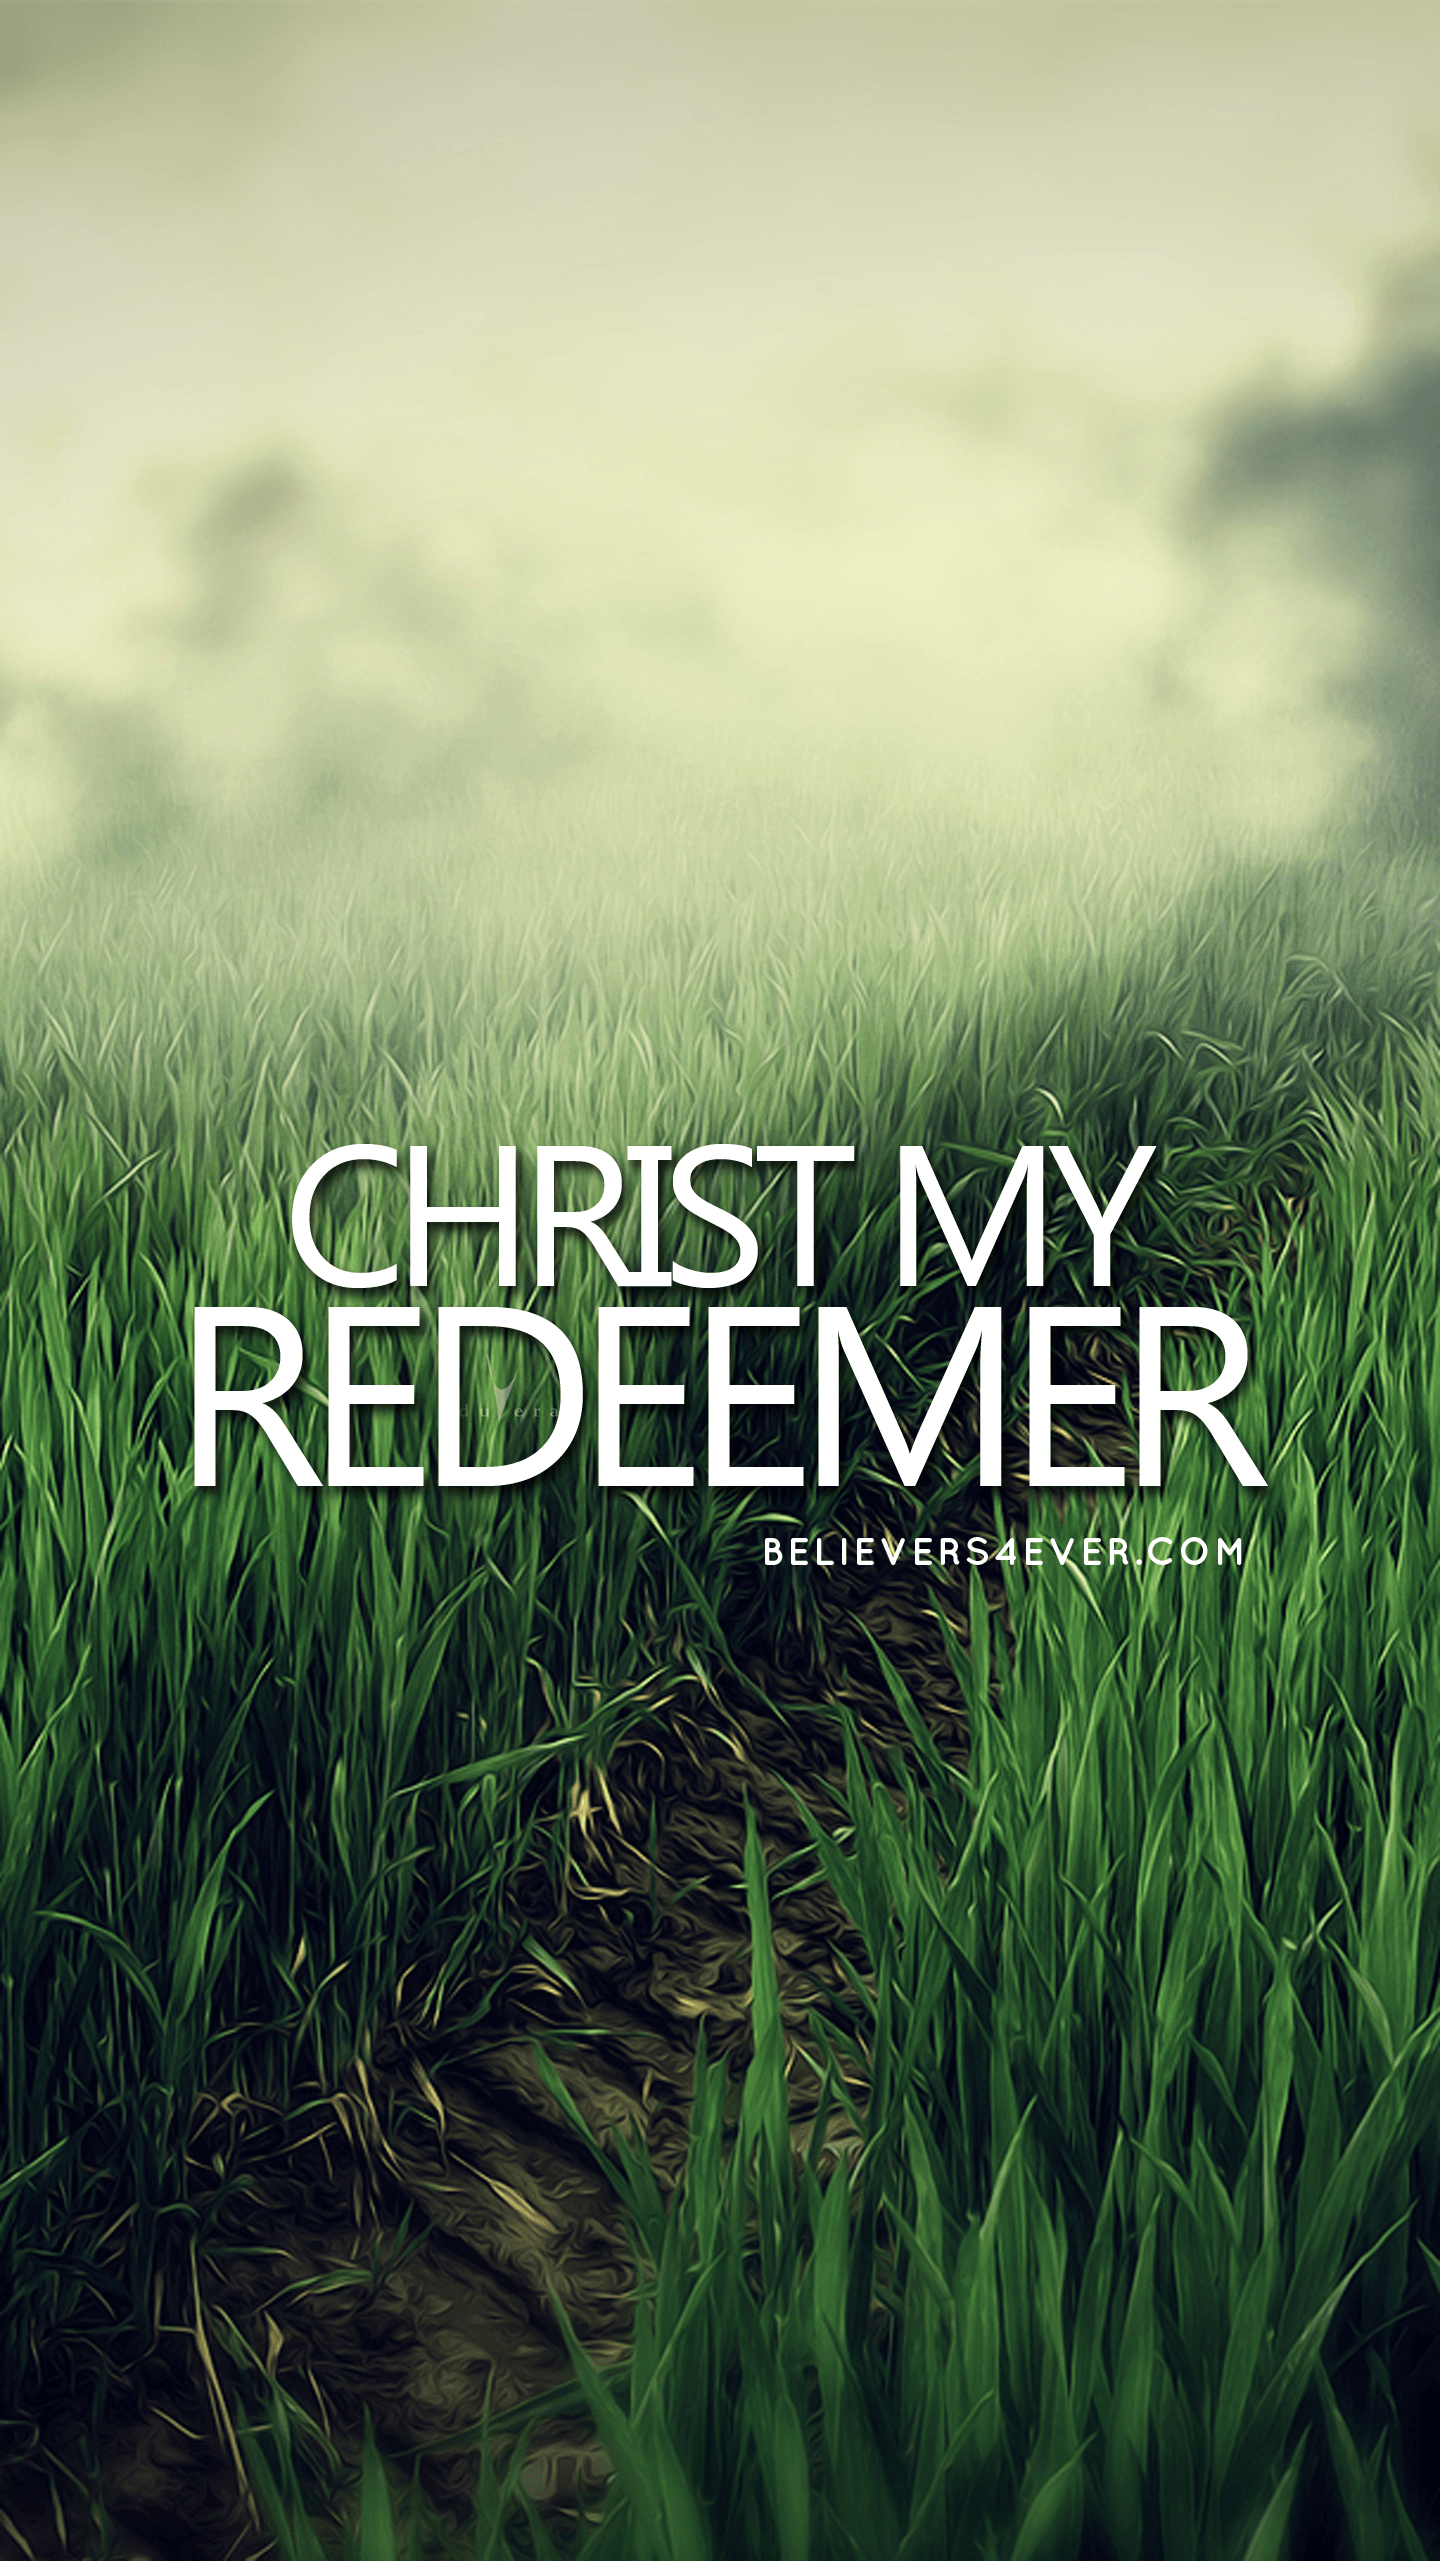 Christ my redeemer. Christian wallpaper, Bible verse wallpaper